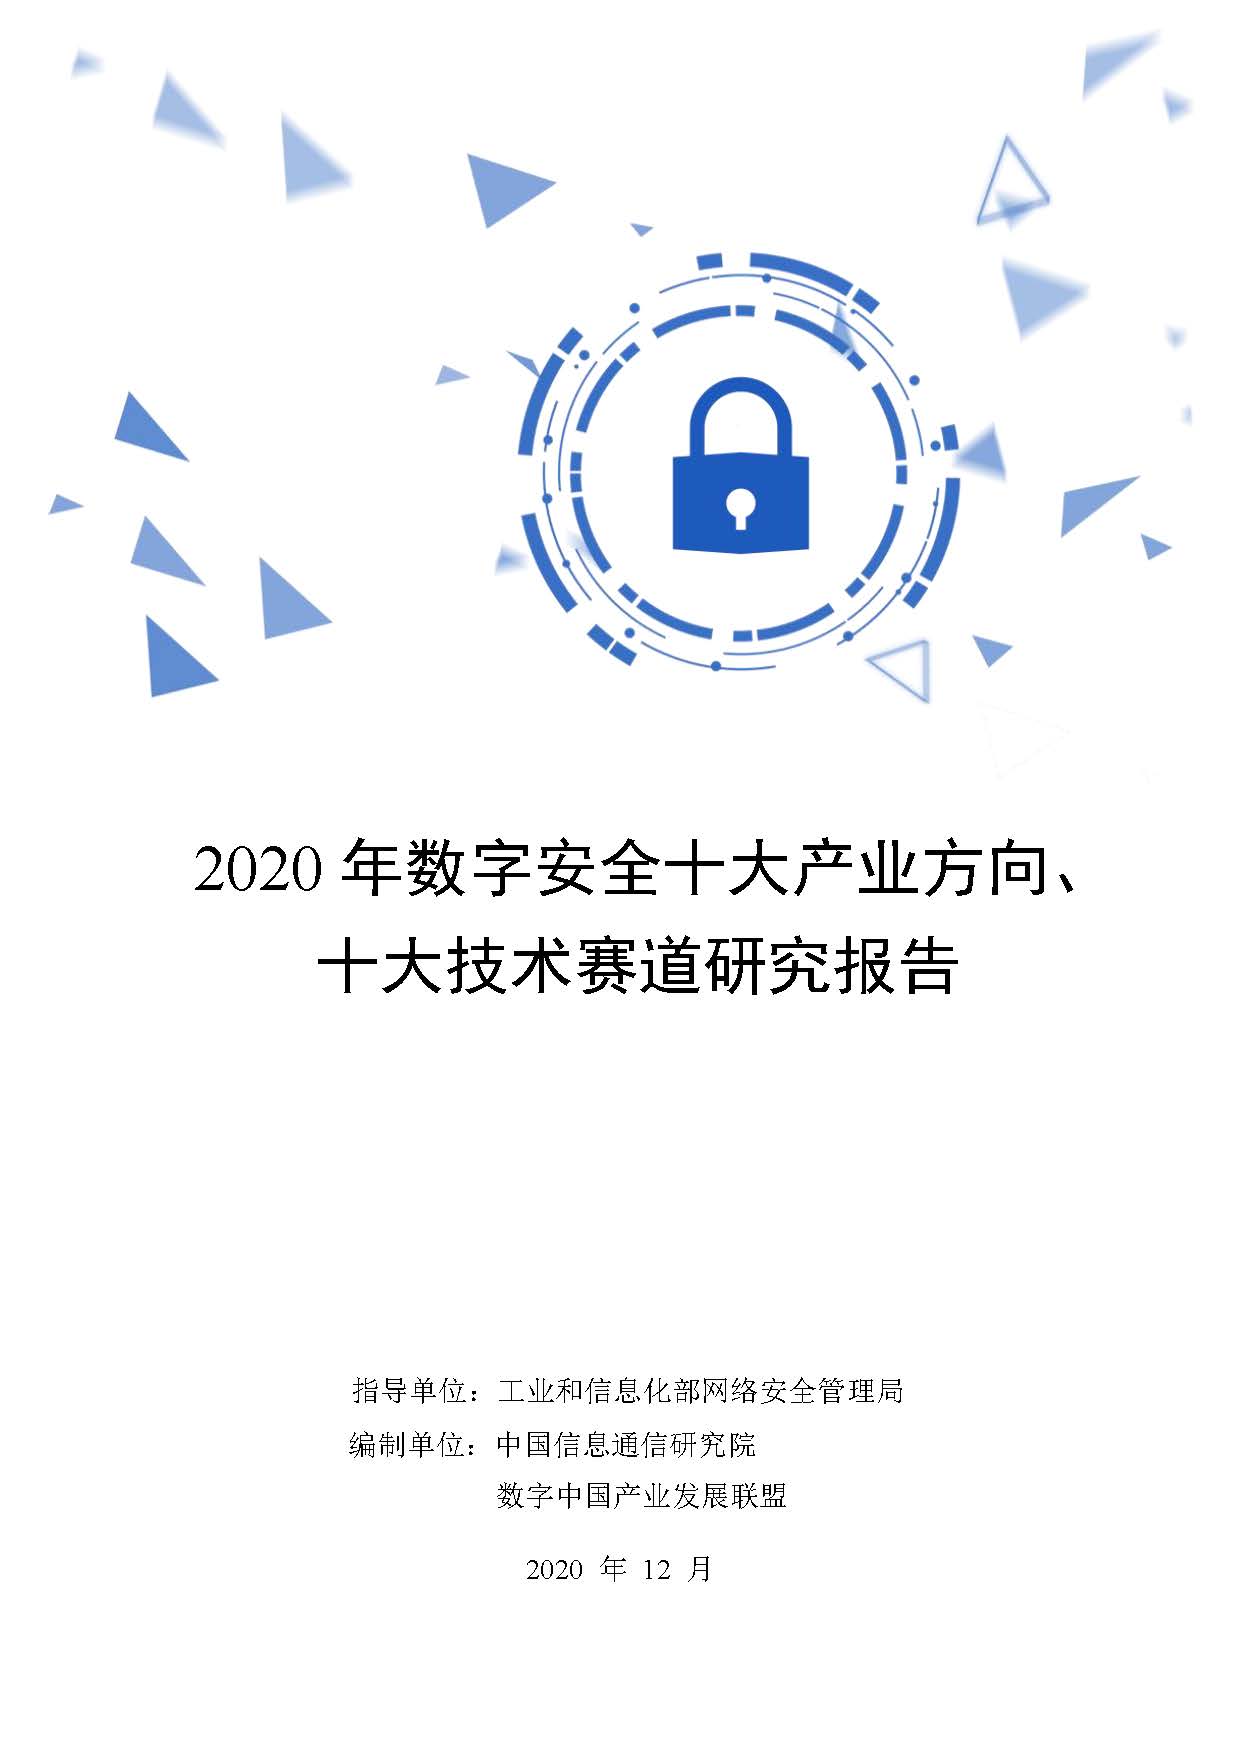 2020年数字安全十大产业方向、十大技术赛道研究报告首页.jpg